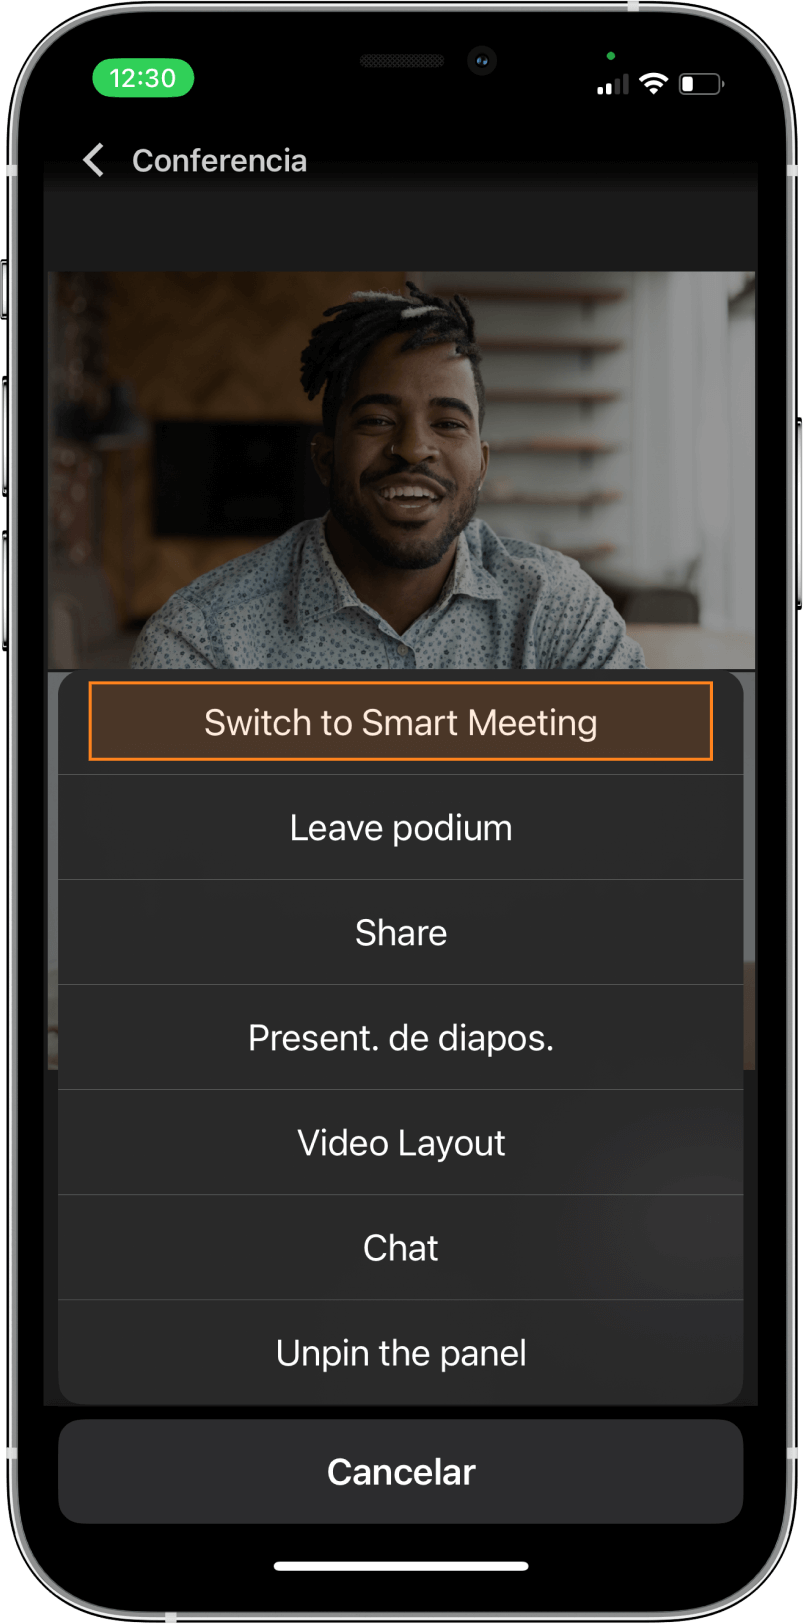 TrueConf 3.3 para iOS: nueva interfaz de usuario, modo de reunión inteligente, acceso sin conexión a chats, contactos e historial de llamadas 6